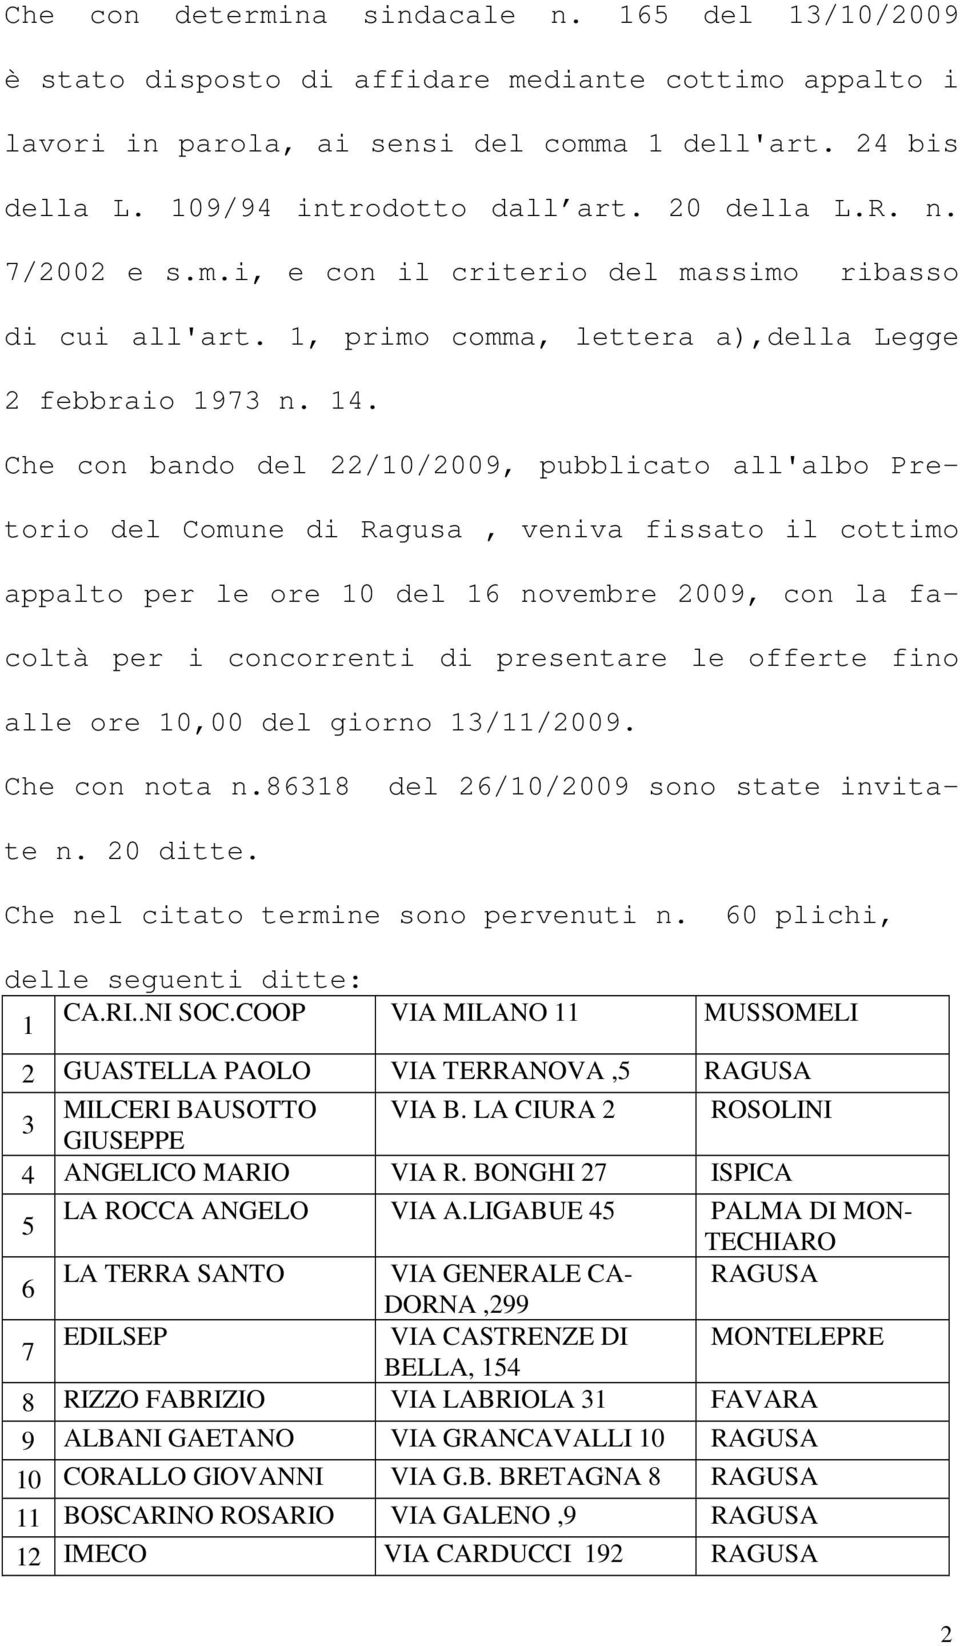 Che con bando del 22/10/2009, pubblicato all'albo Pretorio del Comune di Ragusa, veniva fissato il cottimo appalto per le ore 10 del 16 novembre 2009, con la facoltà per i concorrenti di presentare